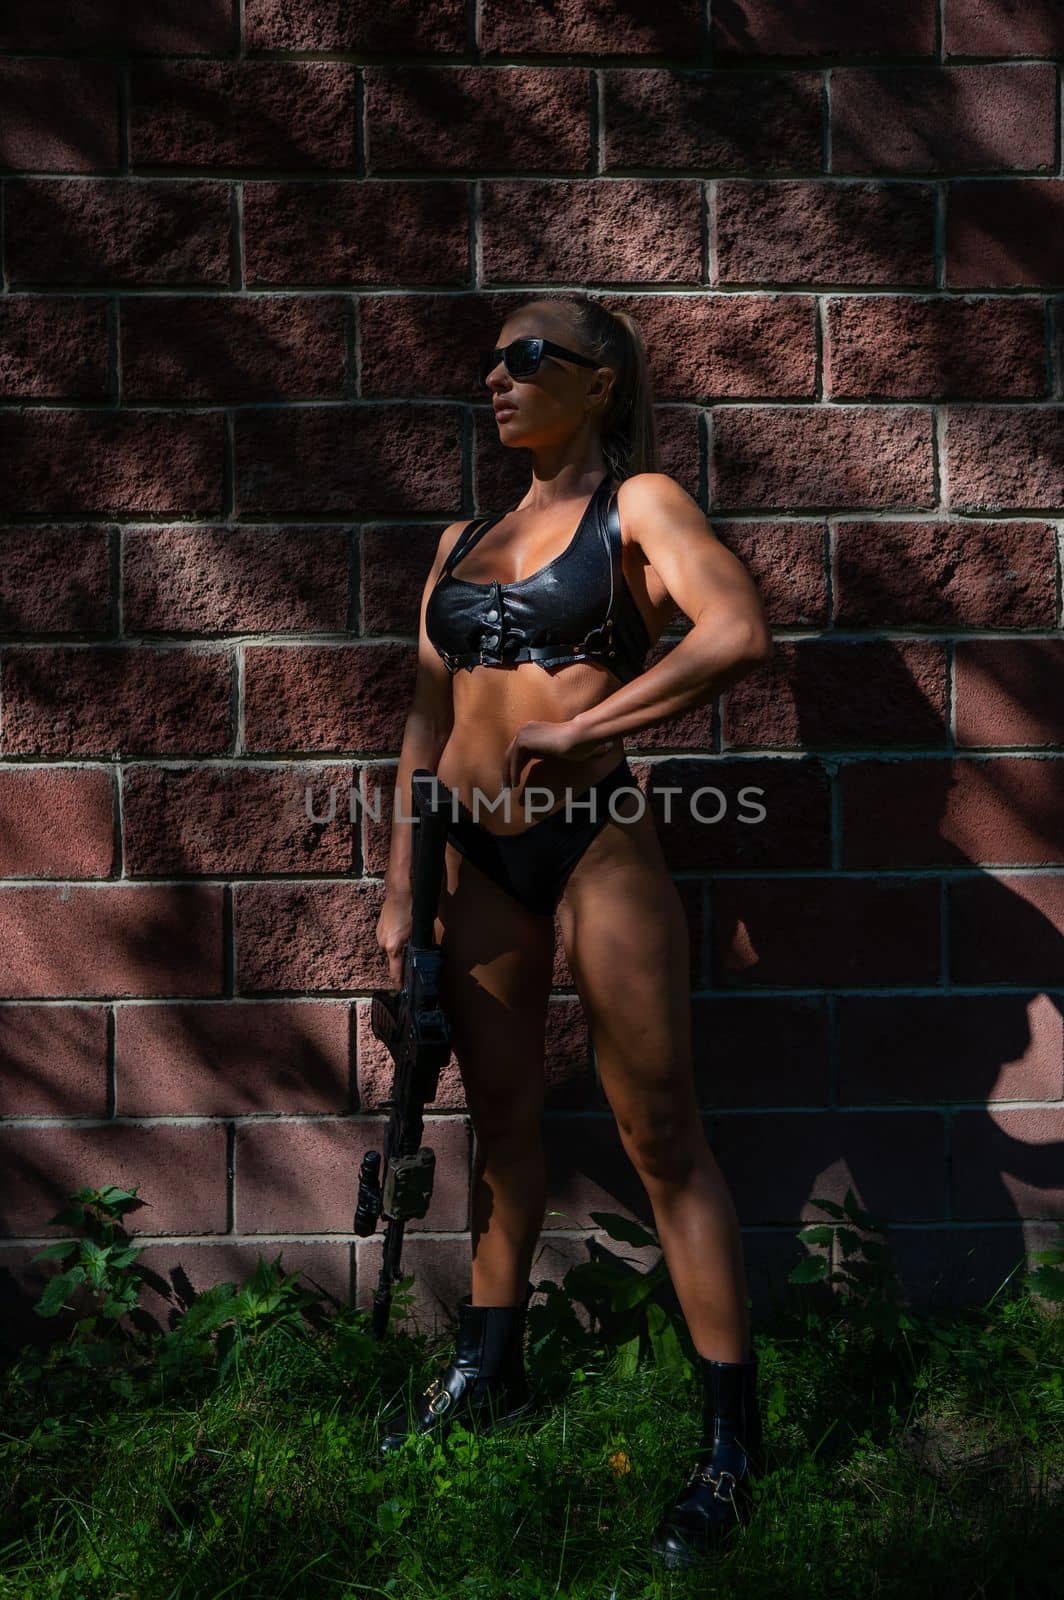 A caucasian woman in a bikini holds a machine gun against a brick wall